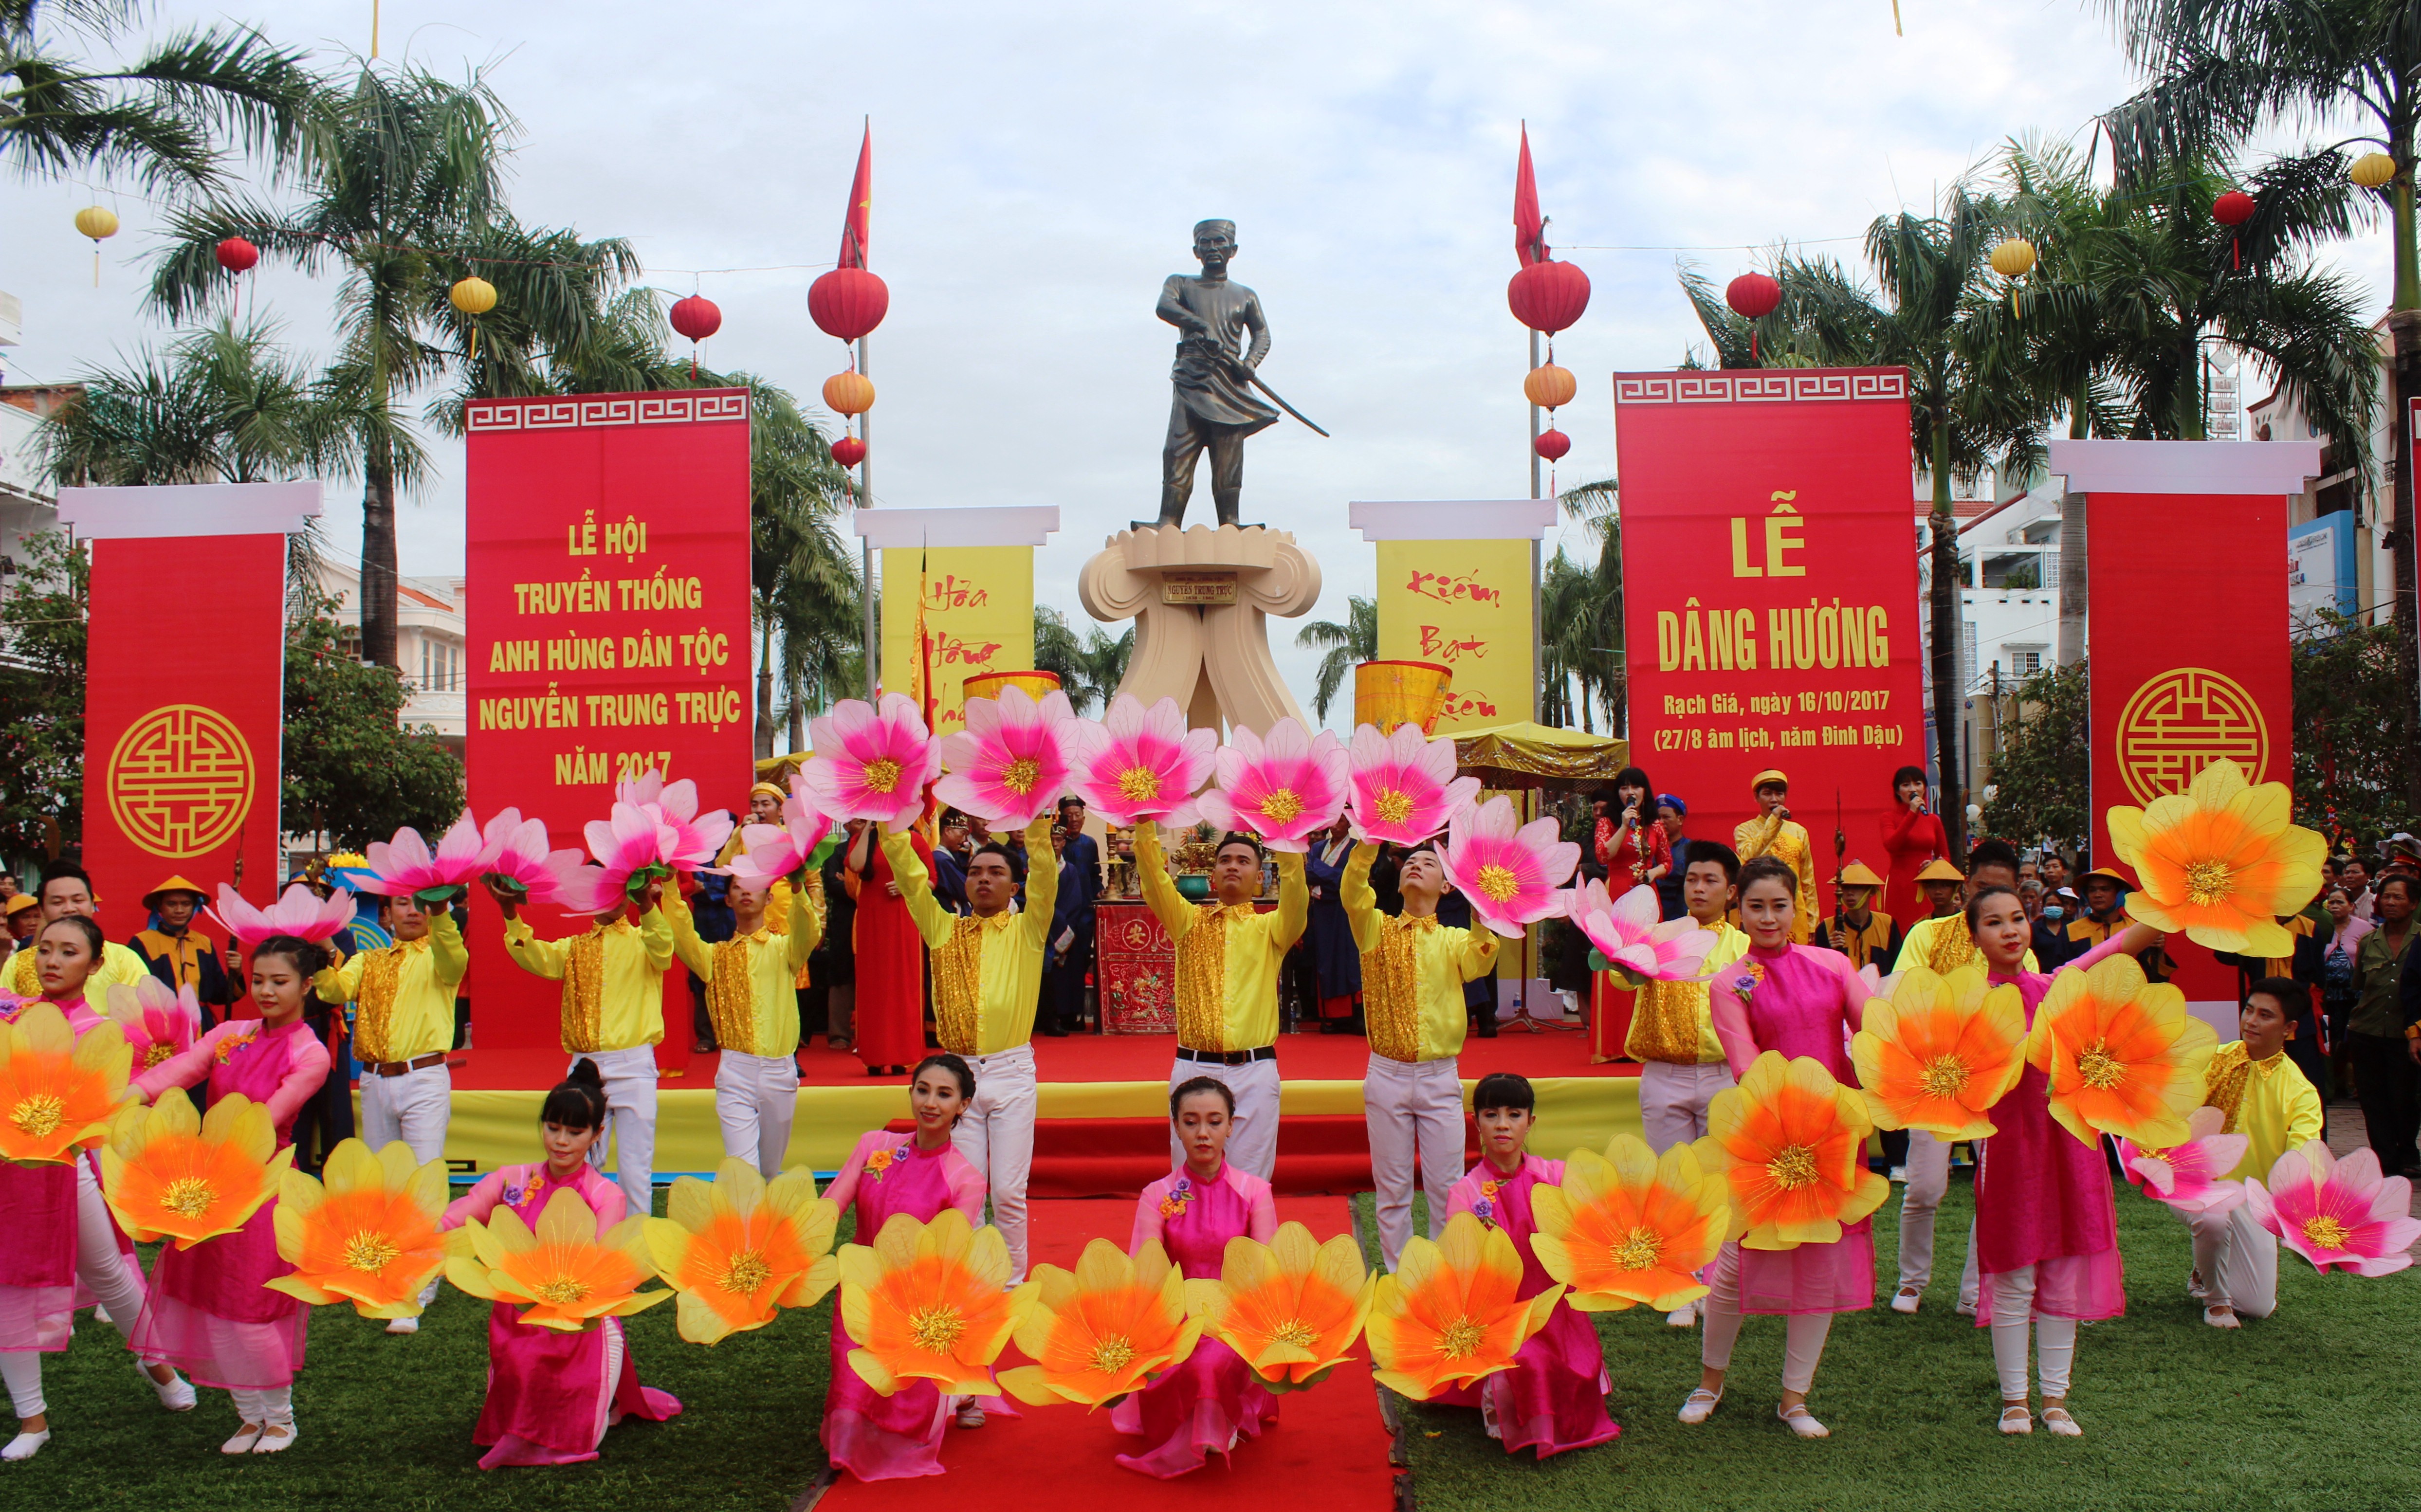 Lễ hội truyền thống Anh hùng dân tộc Nguyễn Trung Trực năm 2018, hứa hẹn với nhiều hoạt động phong phú, hấn dẫn